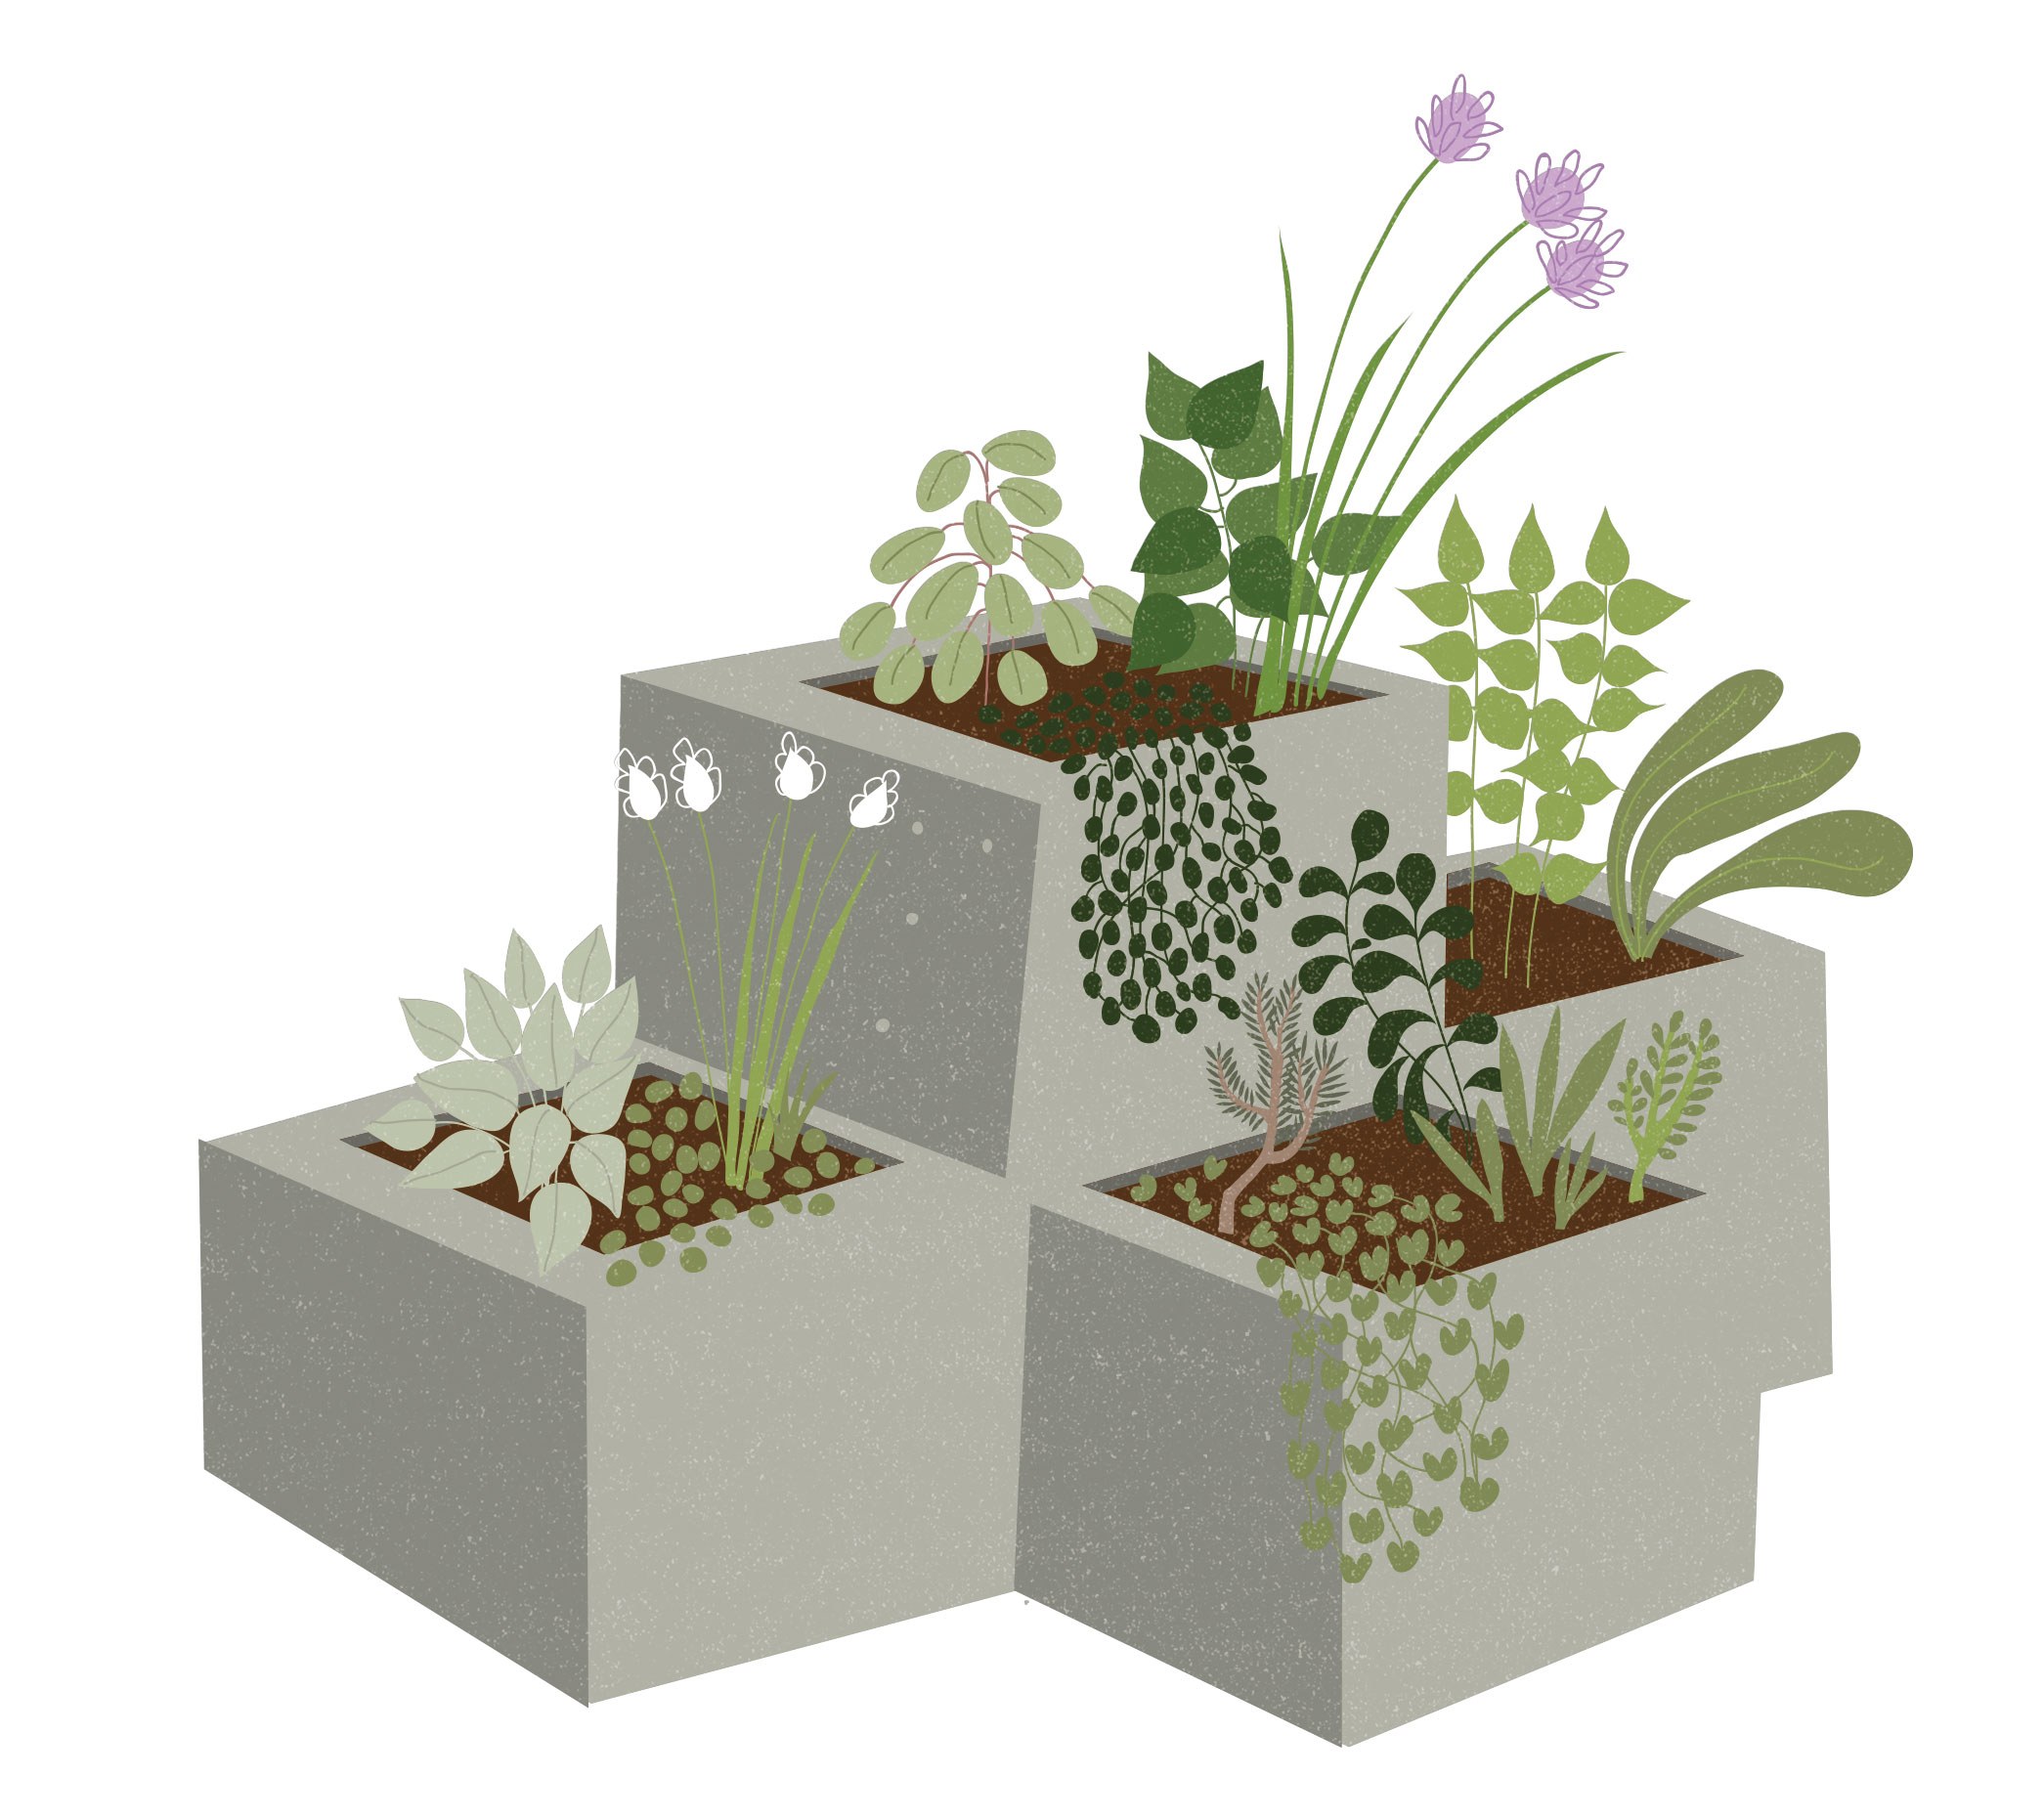 jardim-de-ervas-aromaticas-em-blocos-cimento-ilustracao-do-livro